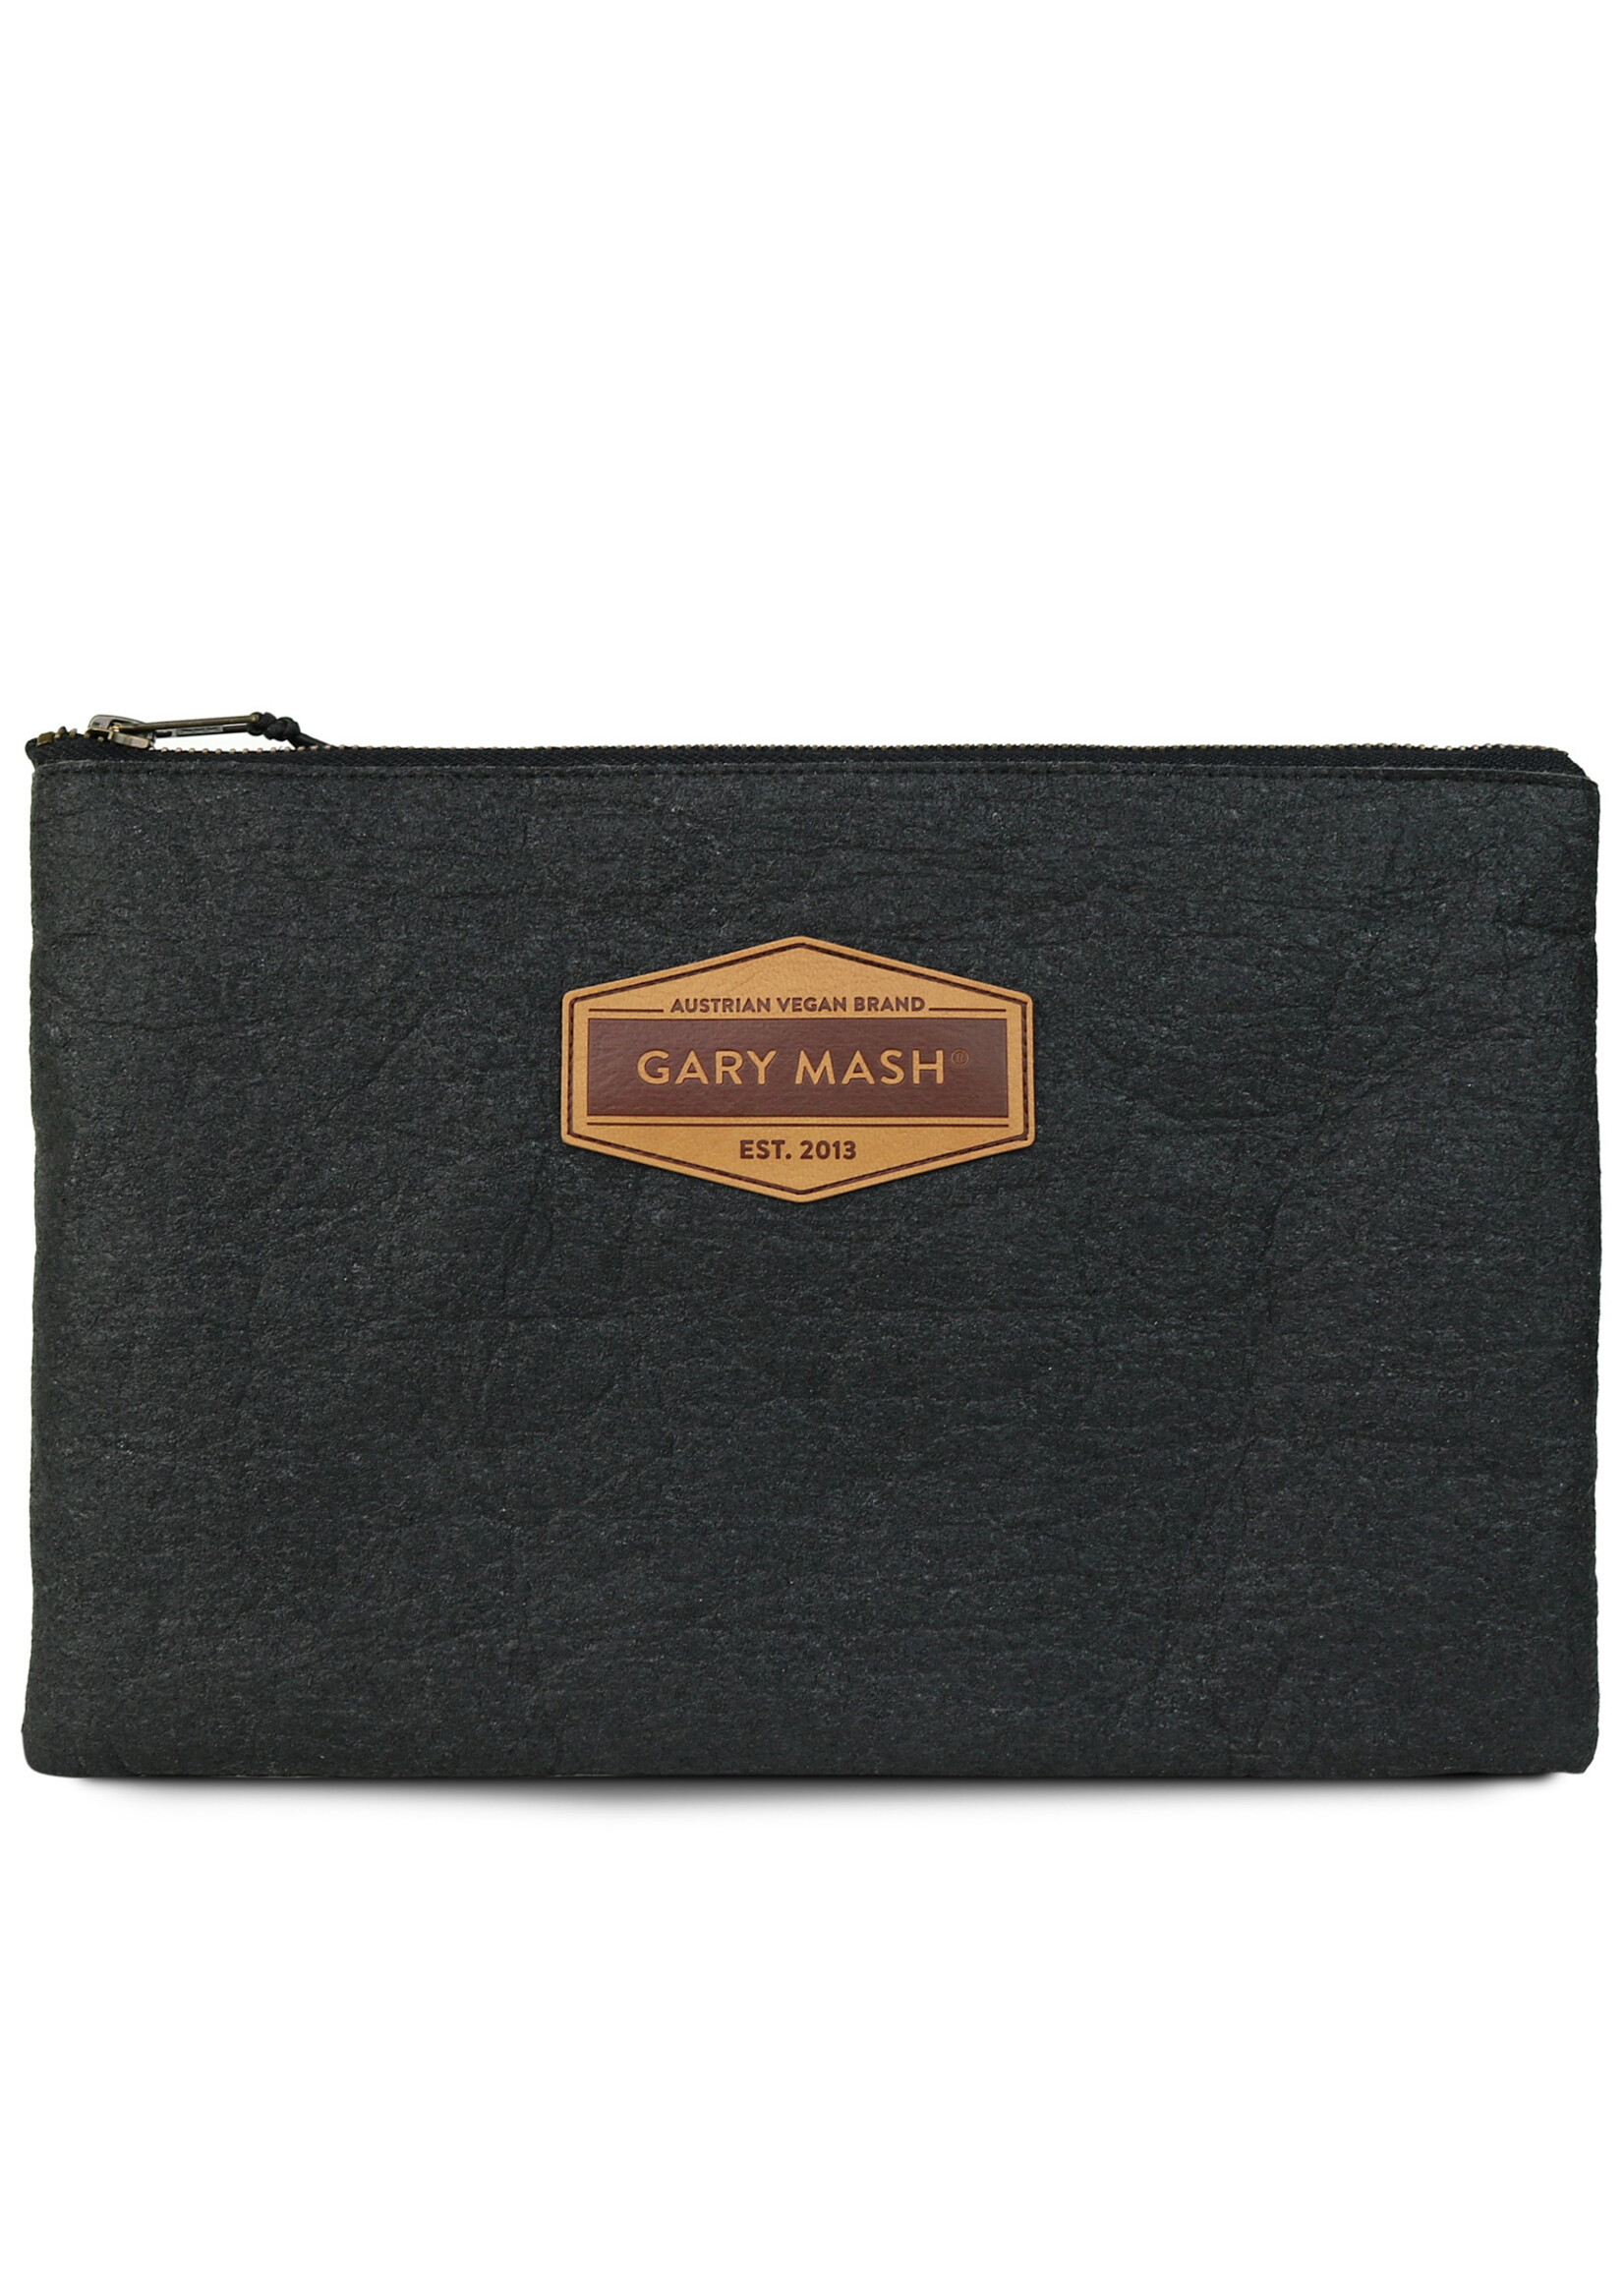 Gary Mash Pinatex Clutch Handtasche schwarz Piñatex® Ananasleder